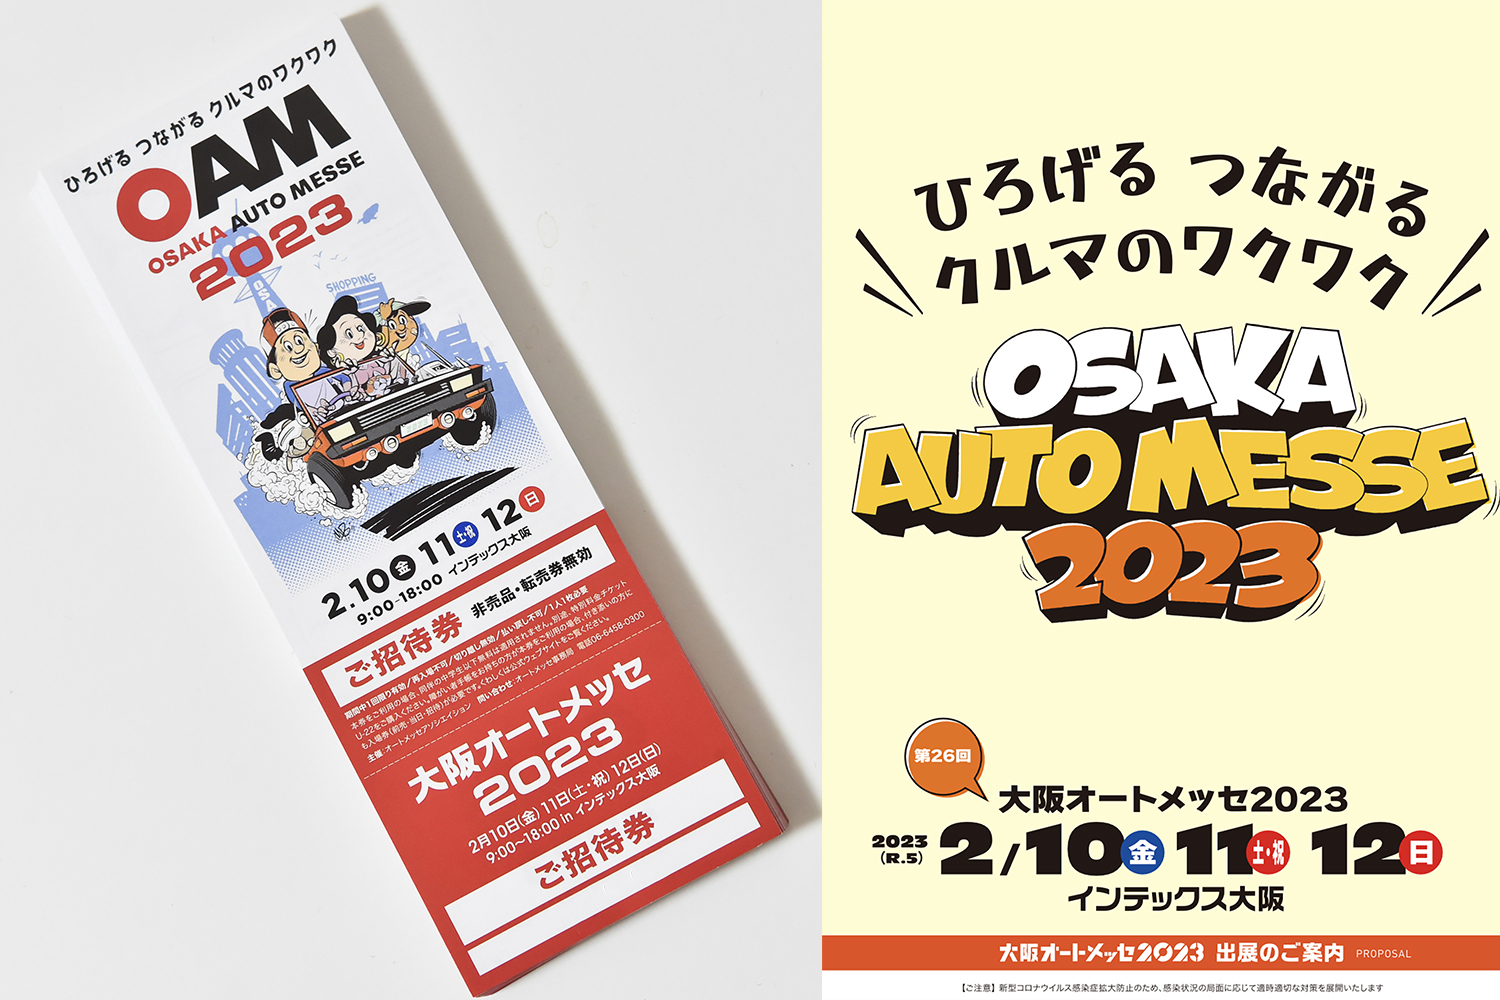 大阪オートメッセ2023の特別招待チケットを合計100名様にプレゼント